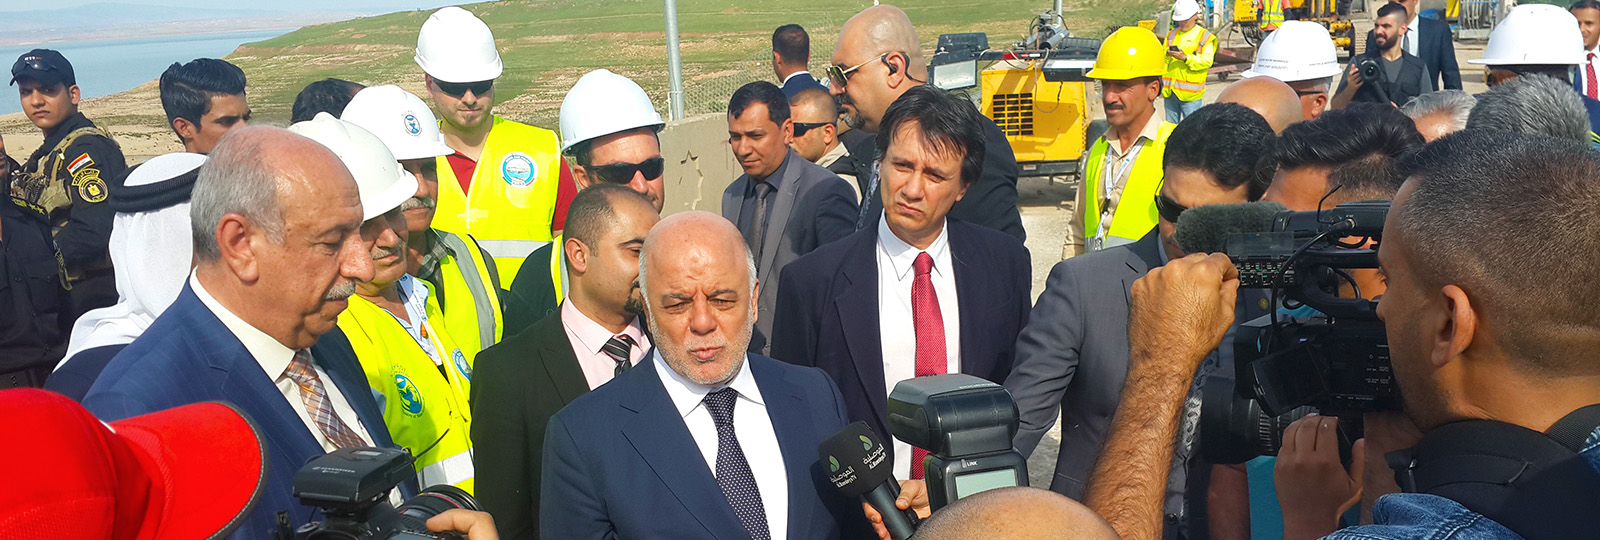 Iraqi Prime Minister visit